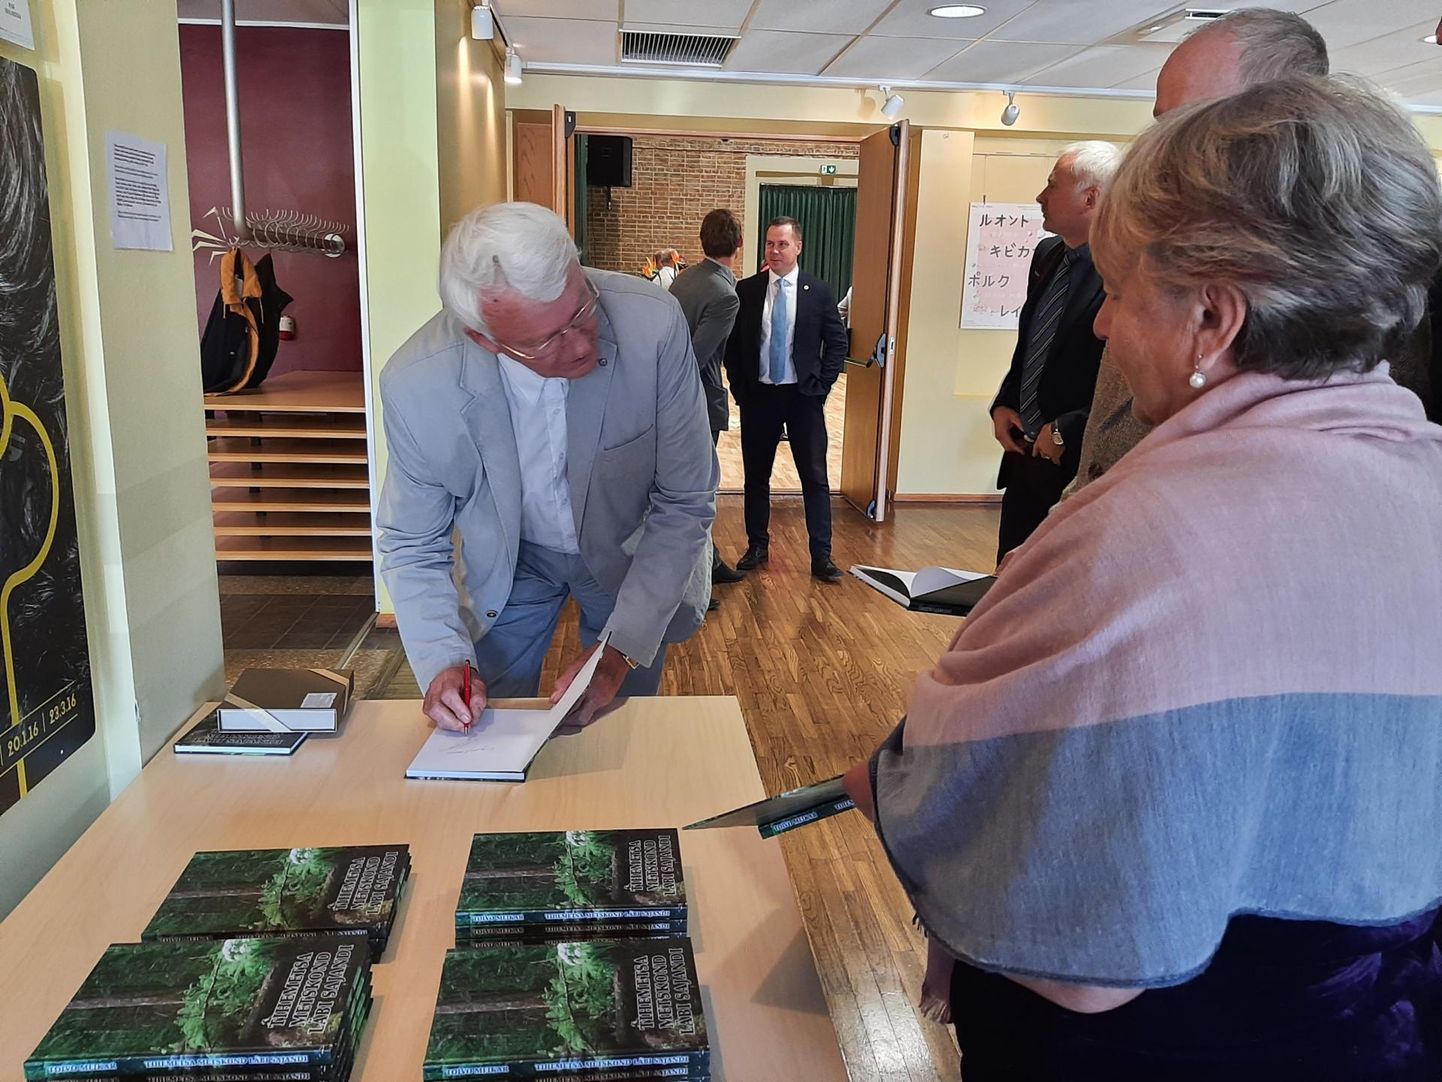 Raamatu “Tihemetsa metskond ­läbi sajandi” autor Toivo Meikar jagas Kilingi-Nõmmes ­autogramme ­neile, kes osalesid metskonna 100. aastapäeva üri­tusel.